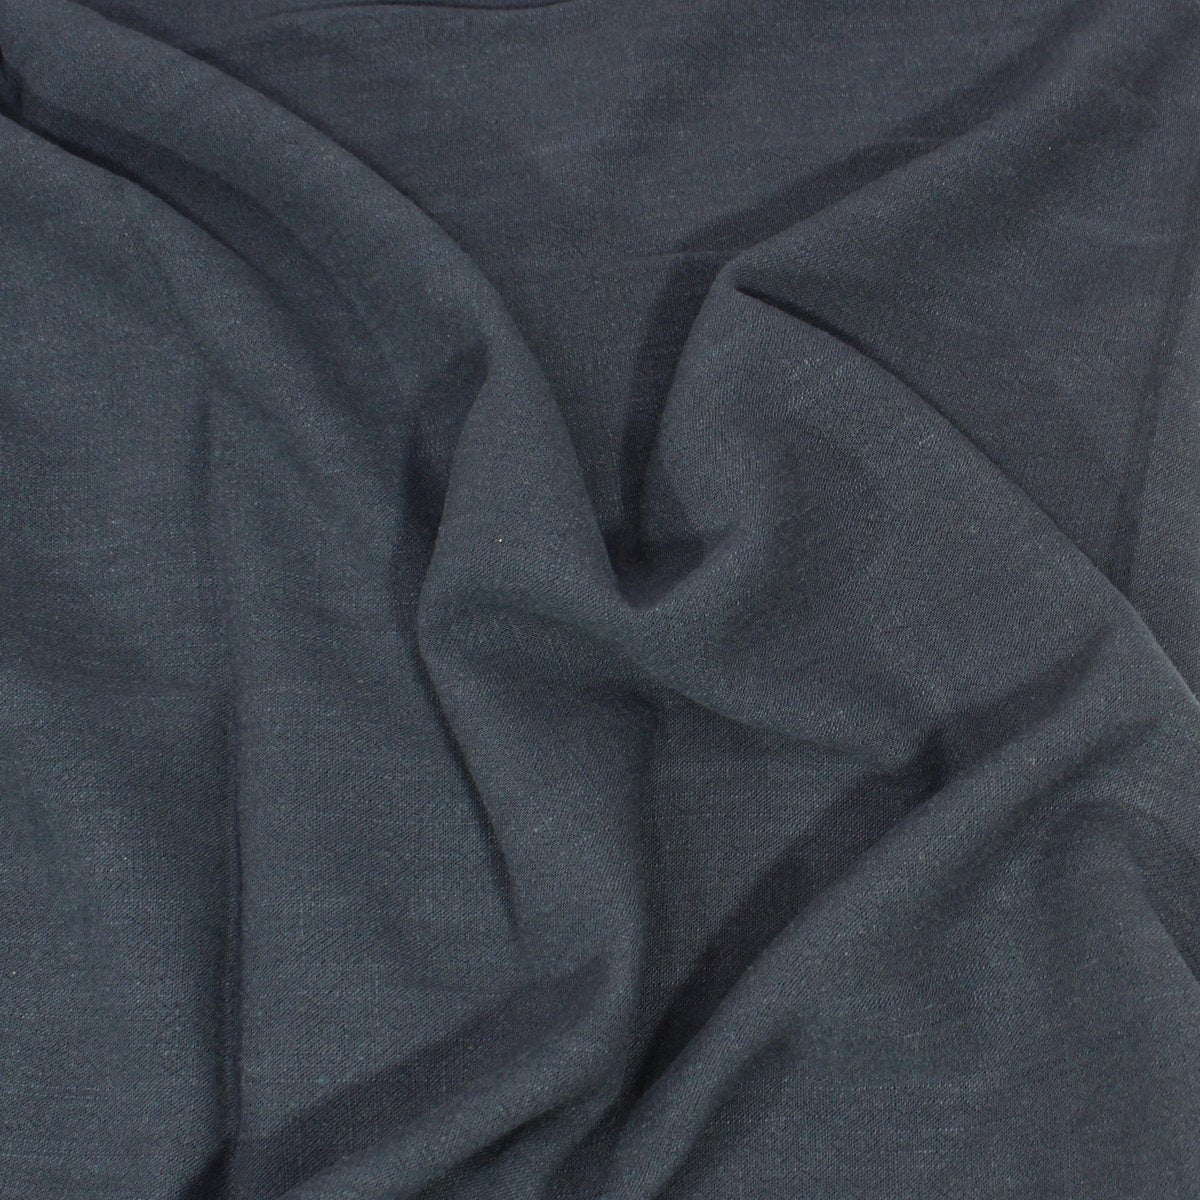 3 Metres Medium Weight Viscose-Linen Blend Fabric 55" Wide - Navy - Pound A Metre